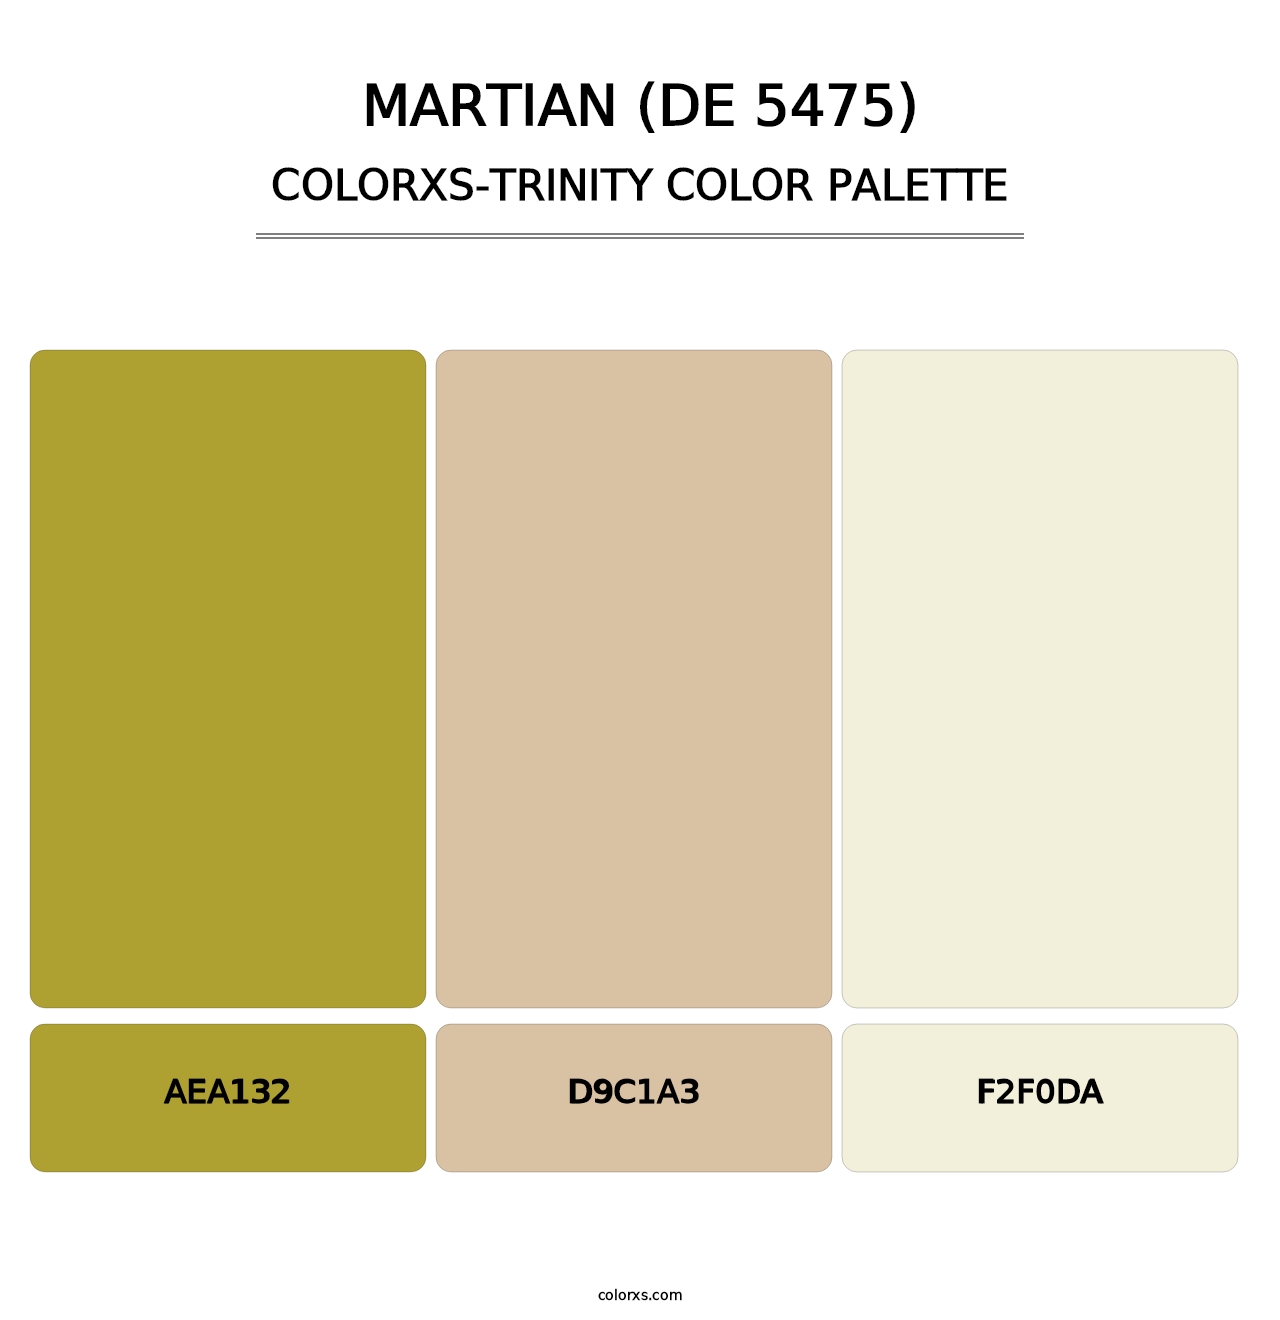 Martian (DE 5475) - Colorxs Trinity Palette